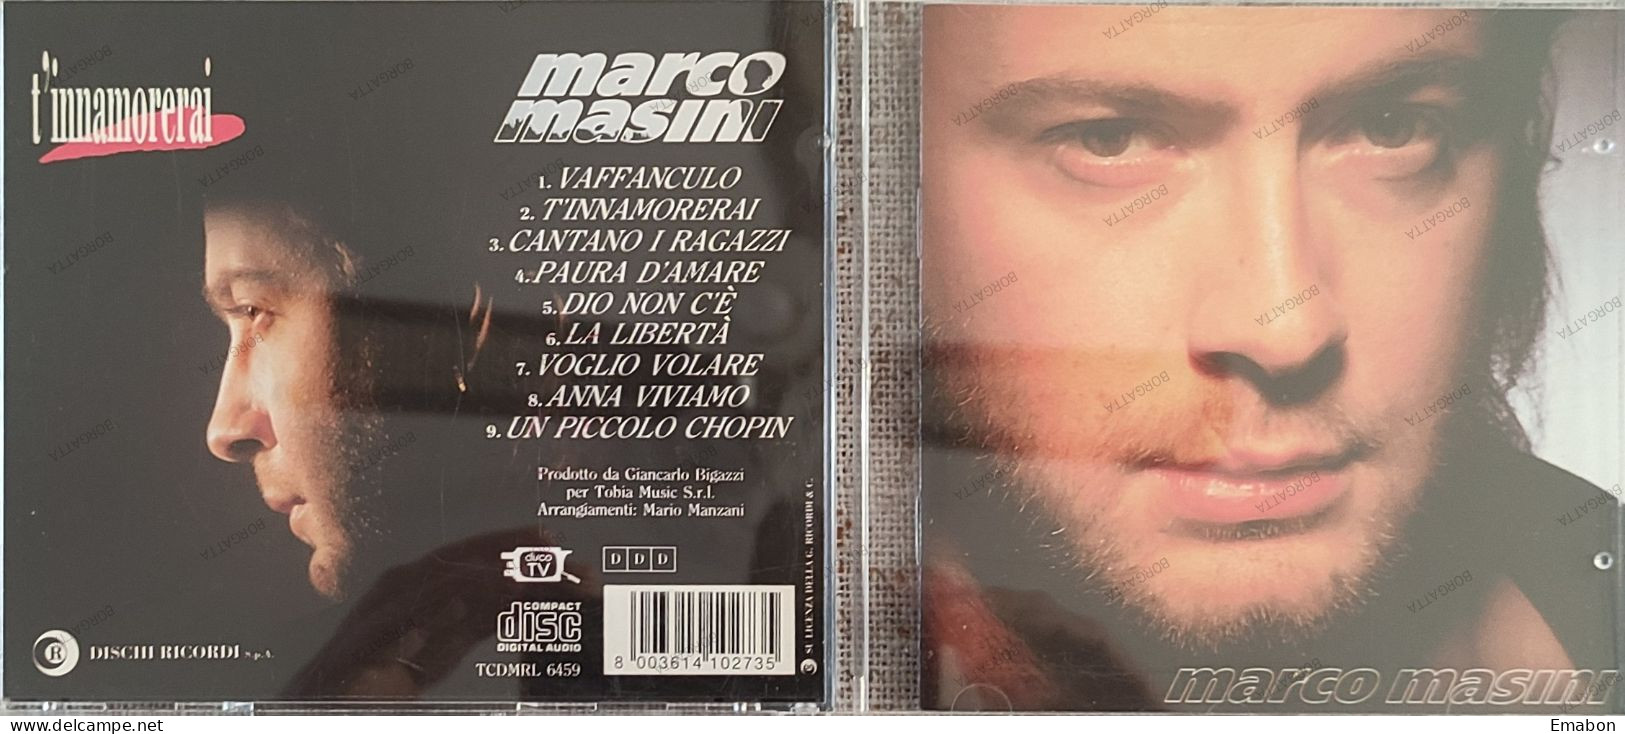 BORGATTA - ITALIANA  - Cd MARCO MASINI - T' INNAMORERAI  - DISCHI RICORDI 1993 -  USATO In Buono Stato - Otros - Canción Italiana